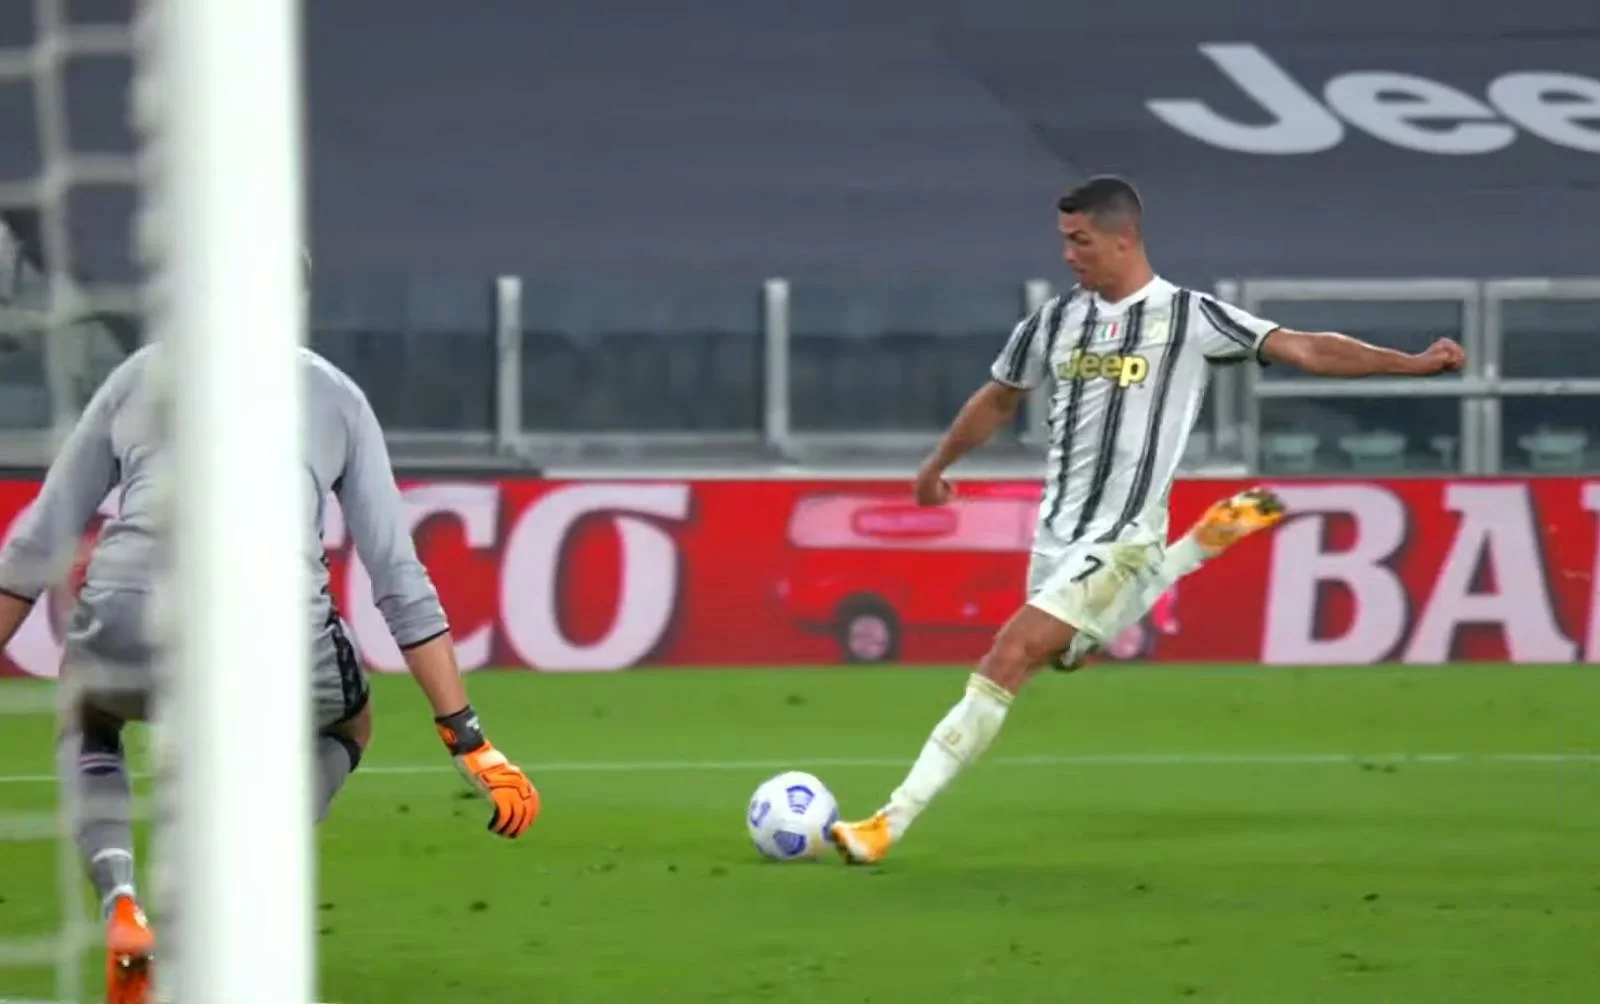 Capocannoniere Serie A 2020/21: i bookmakers puntano tutto su Ronaldo